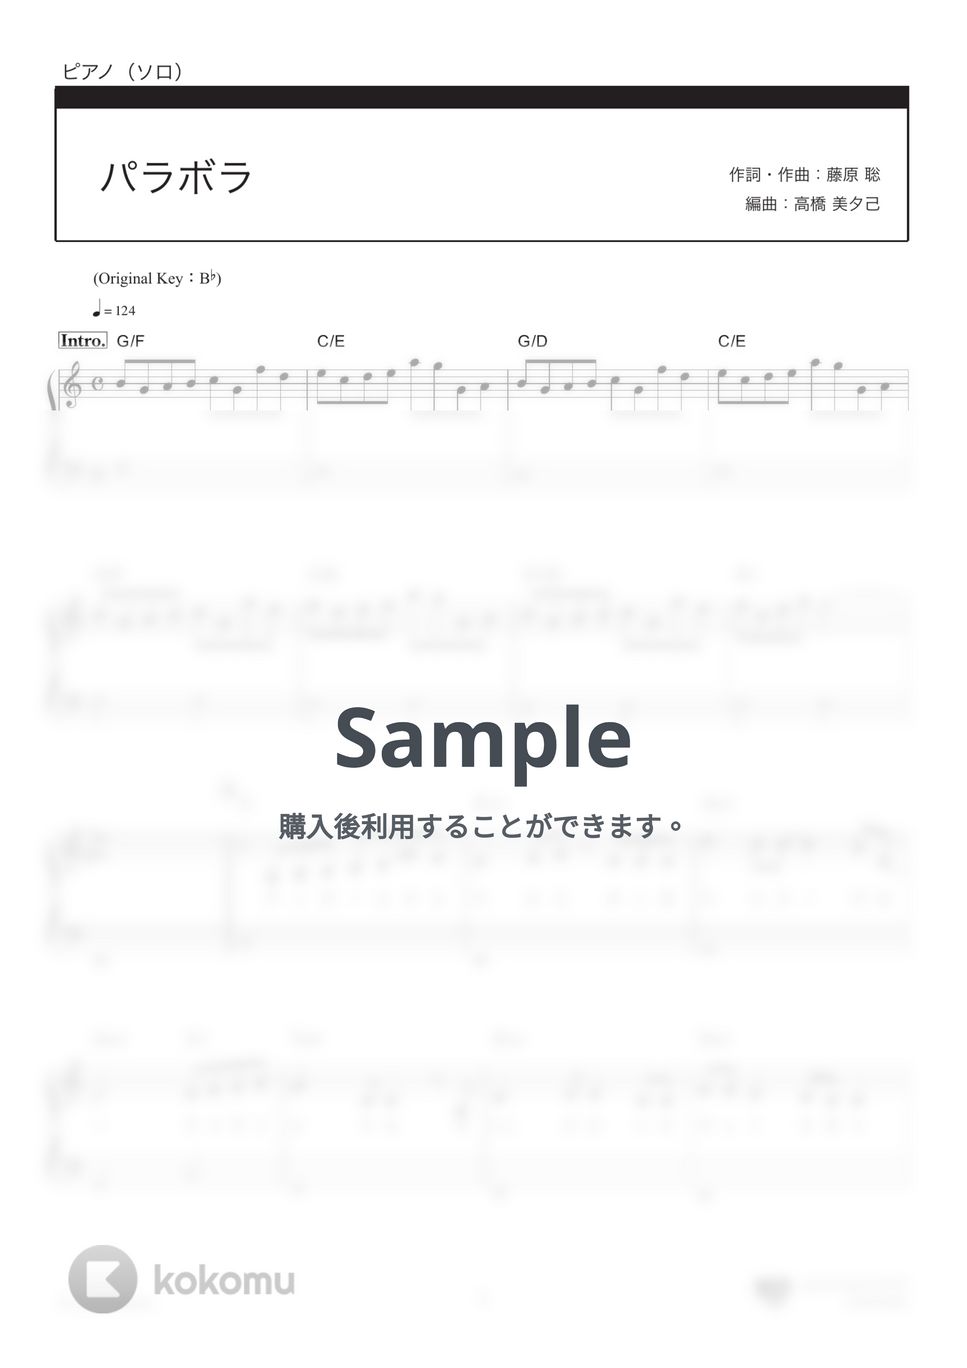 Official髭男dism - パラボラ (ハ長調アレンジ/「カルピスウォーター」CMソング) by 楽譜仕事人_高橋美夕己